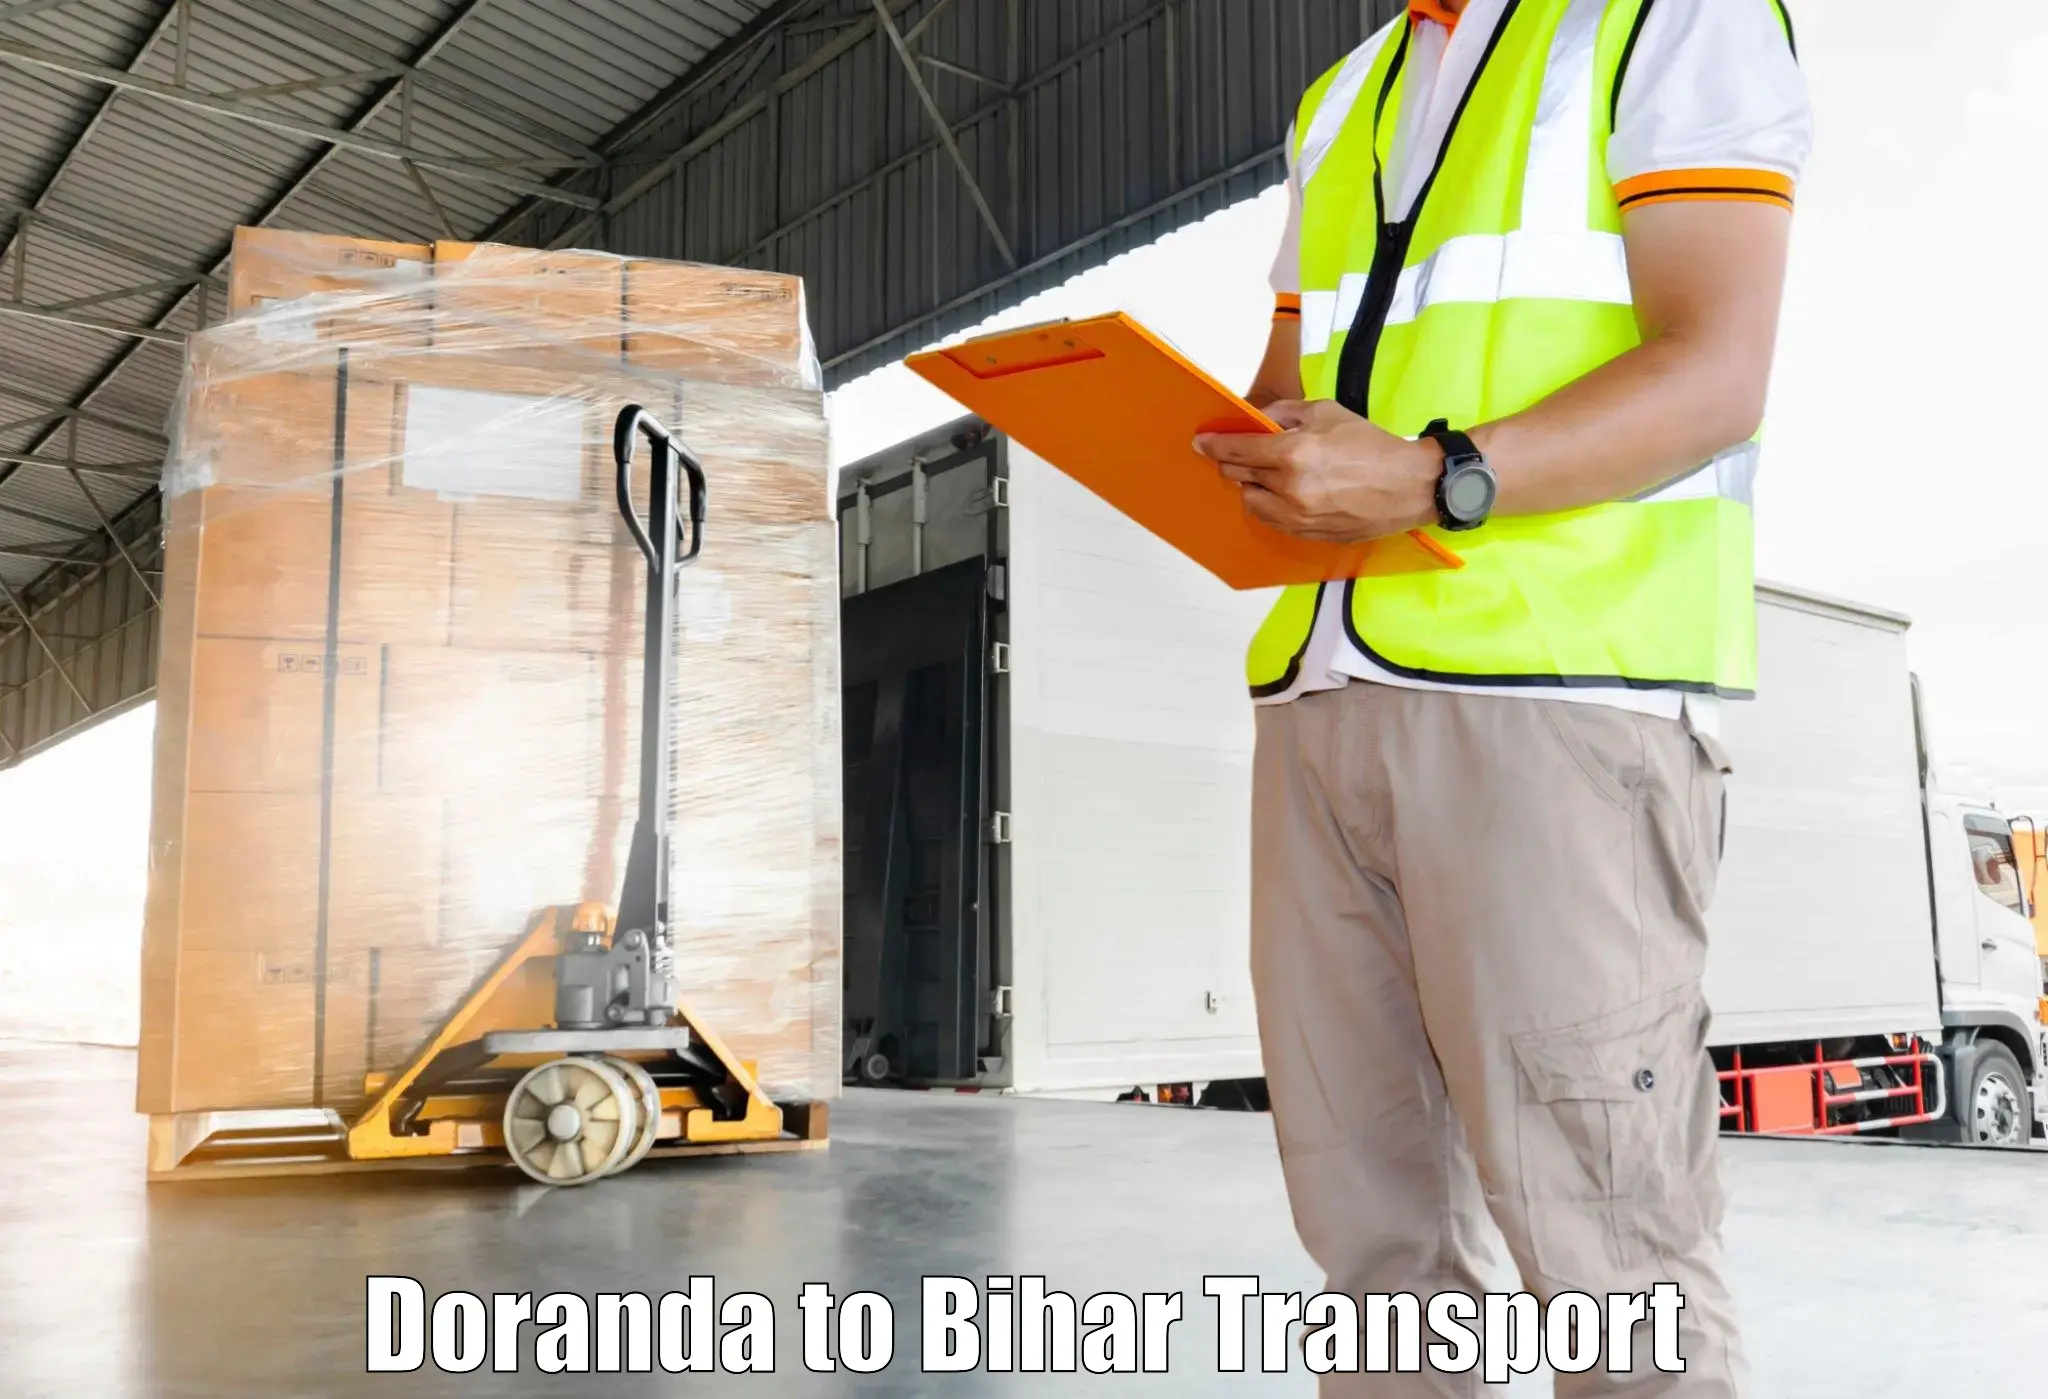 Road transport online services in Doranda to Forbesganj